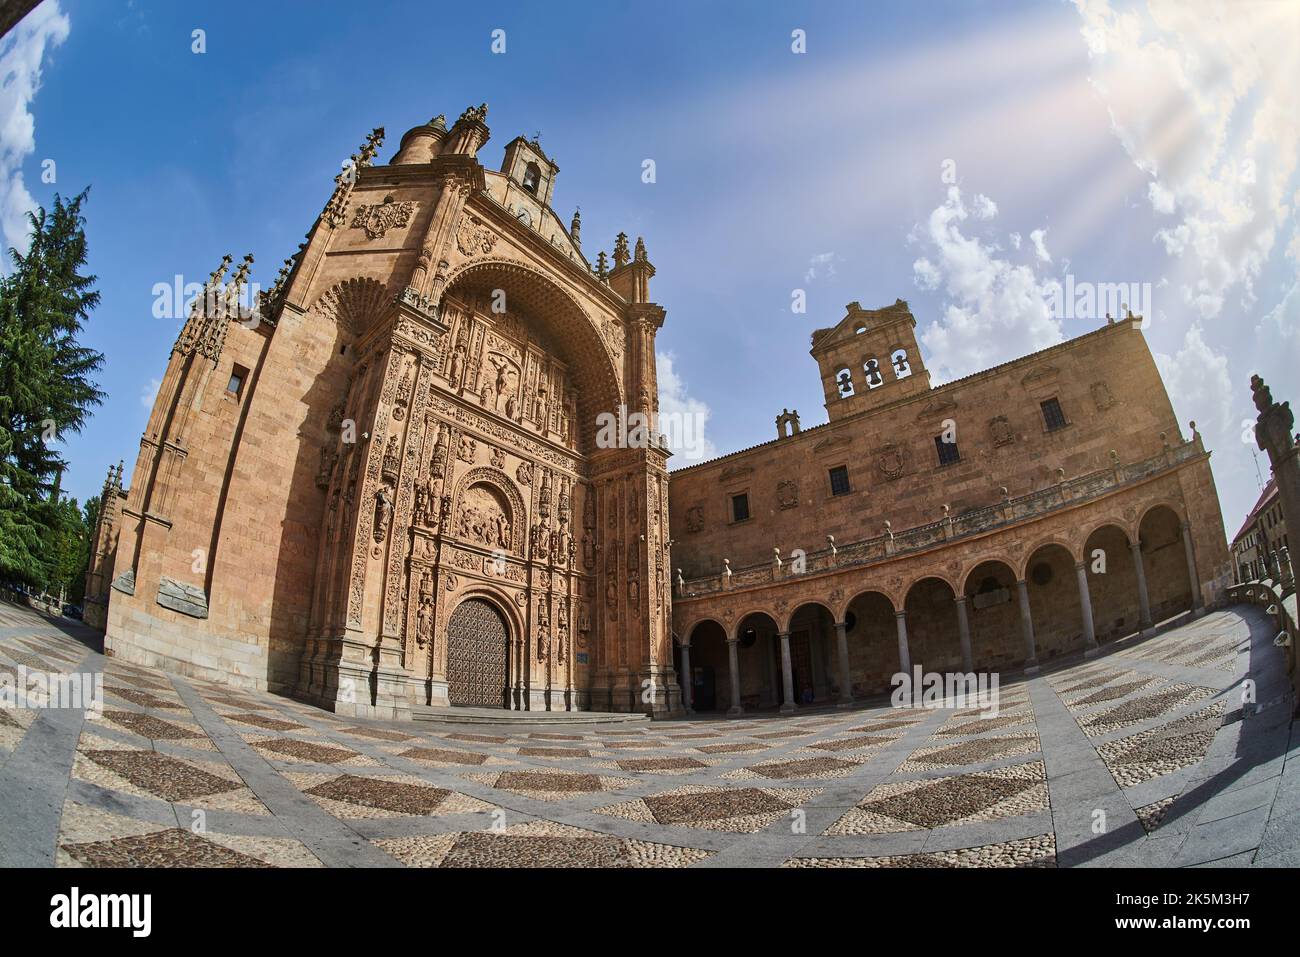 Convento de San Esteban a Salamanca, Spagna. Un monastero domenicano, il Convento de San Esteban (Saint Stephen) è stata costruita nel 1524 su iniziativa di Foto Stock